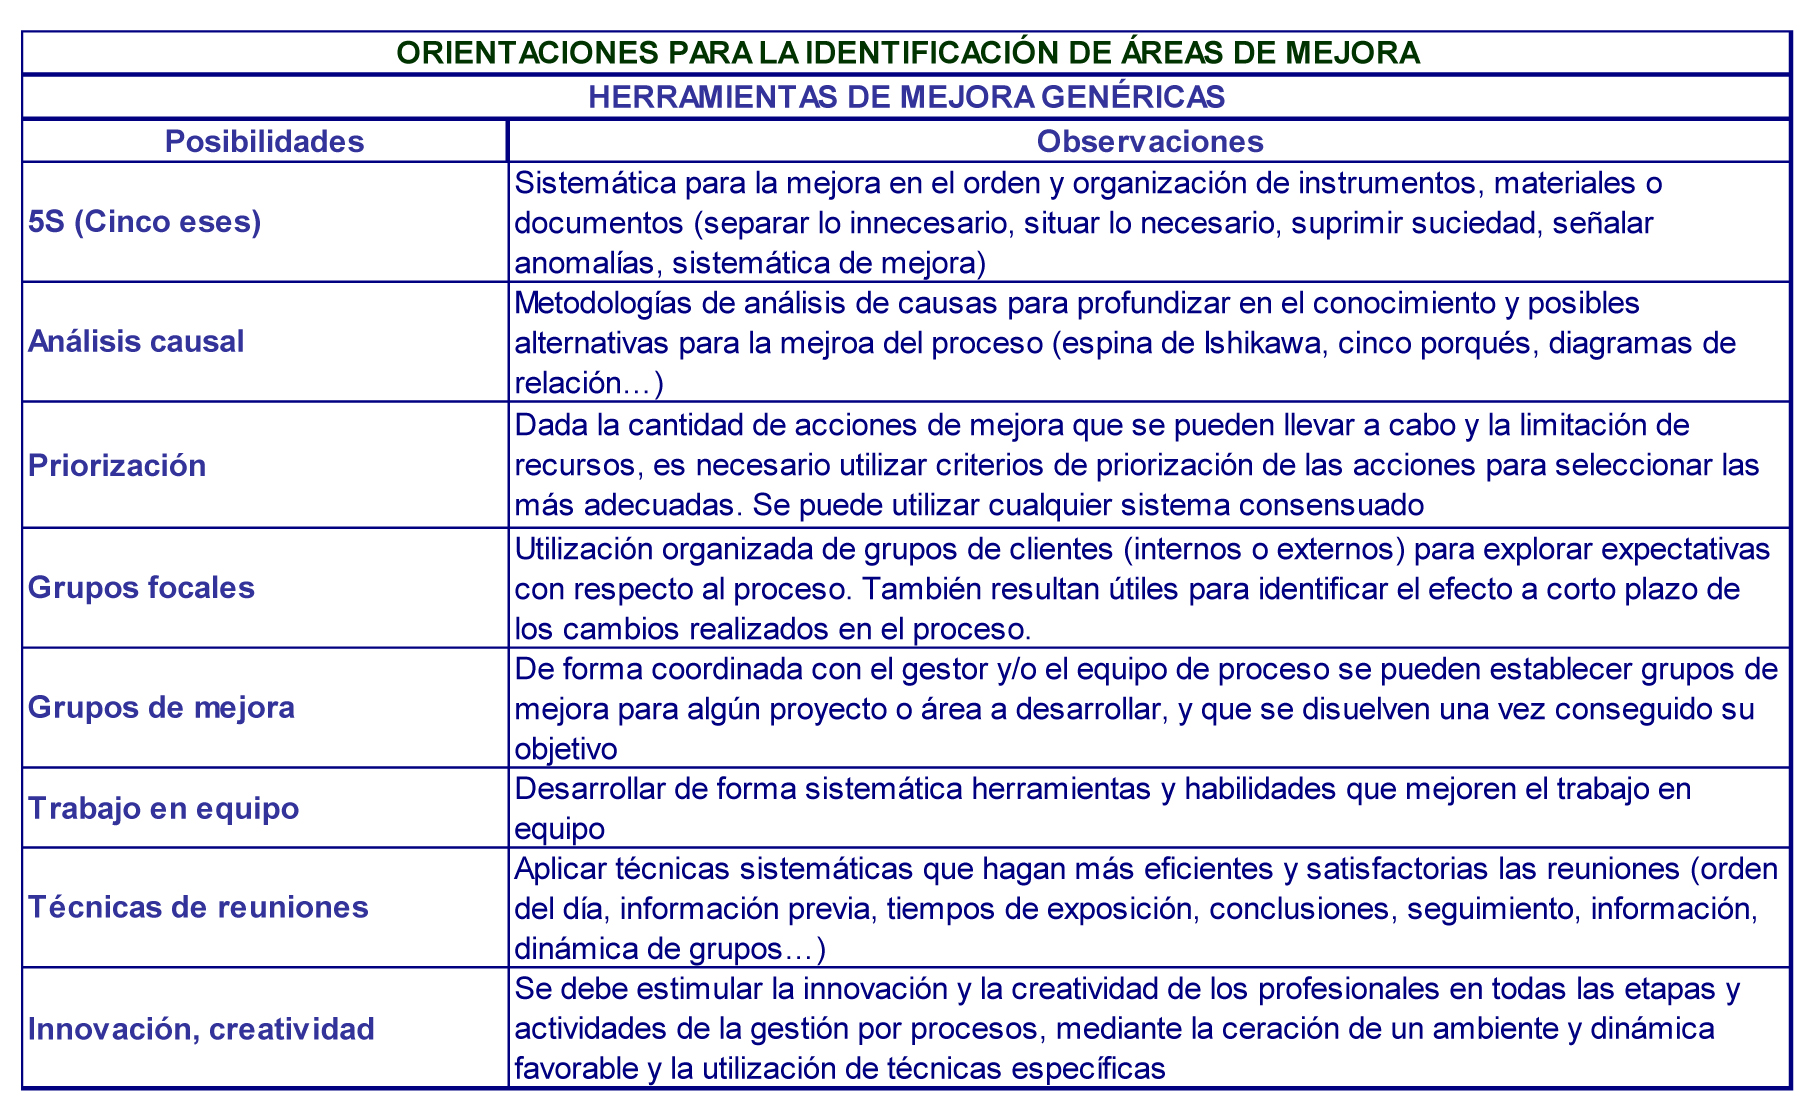 Autor: Oscar Moracho del Río Tabla 8 - Herramientas de mejora genéricas 5.